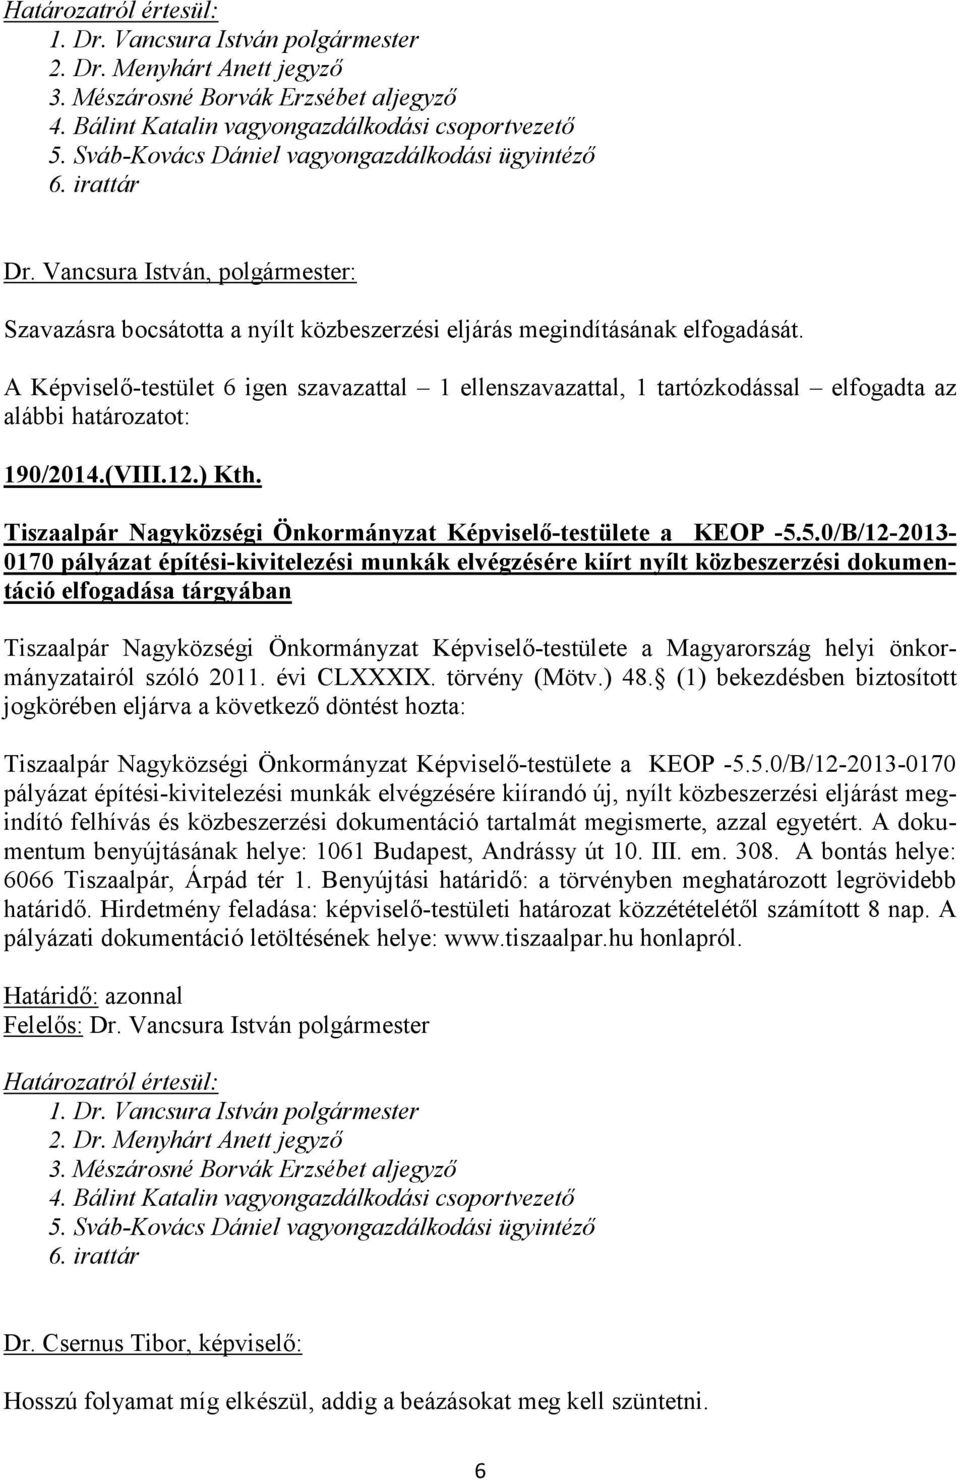 5.0/B/12-2013- 0170 pályázat építési-kivitelezési munkák elvégzésére kiírt nyílt közbeszerzési dokumentáció elfogadása tárgyában Tiszaalpár Nagyközségi Önkormányzat Képviselő-testülete a Magyarország